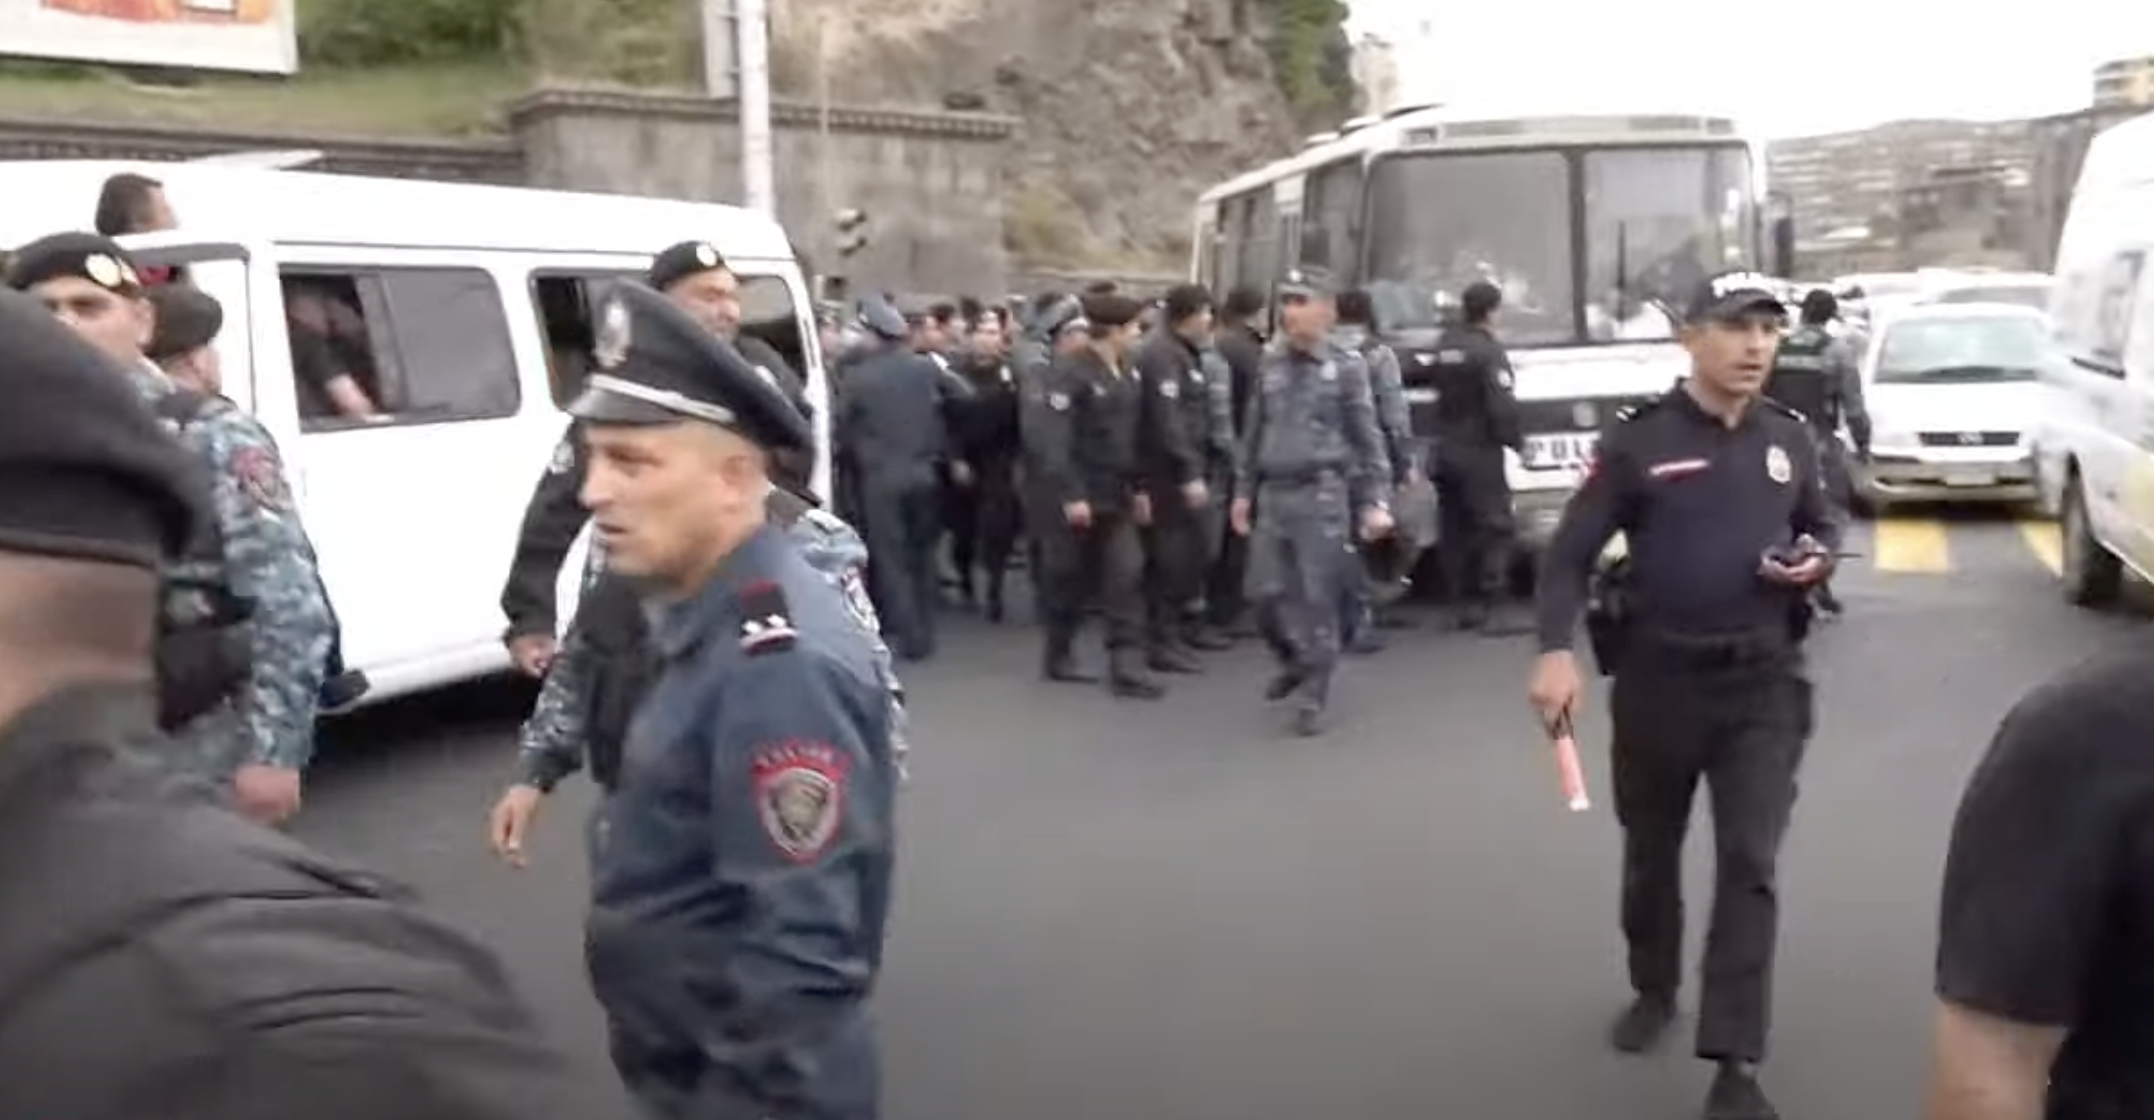 Erməni polisi neçə gündür davam edən mitinqi dağıdır - Canlı